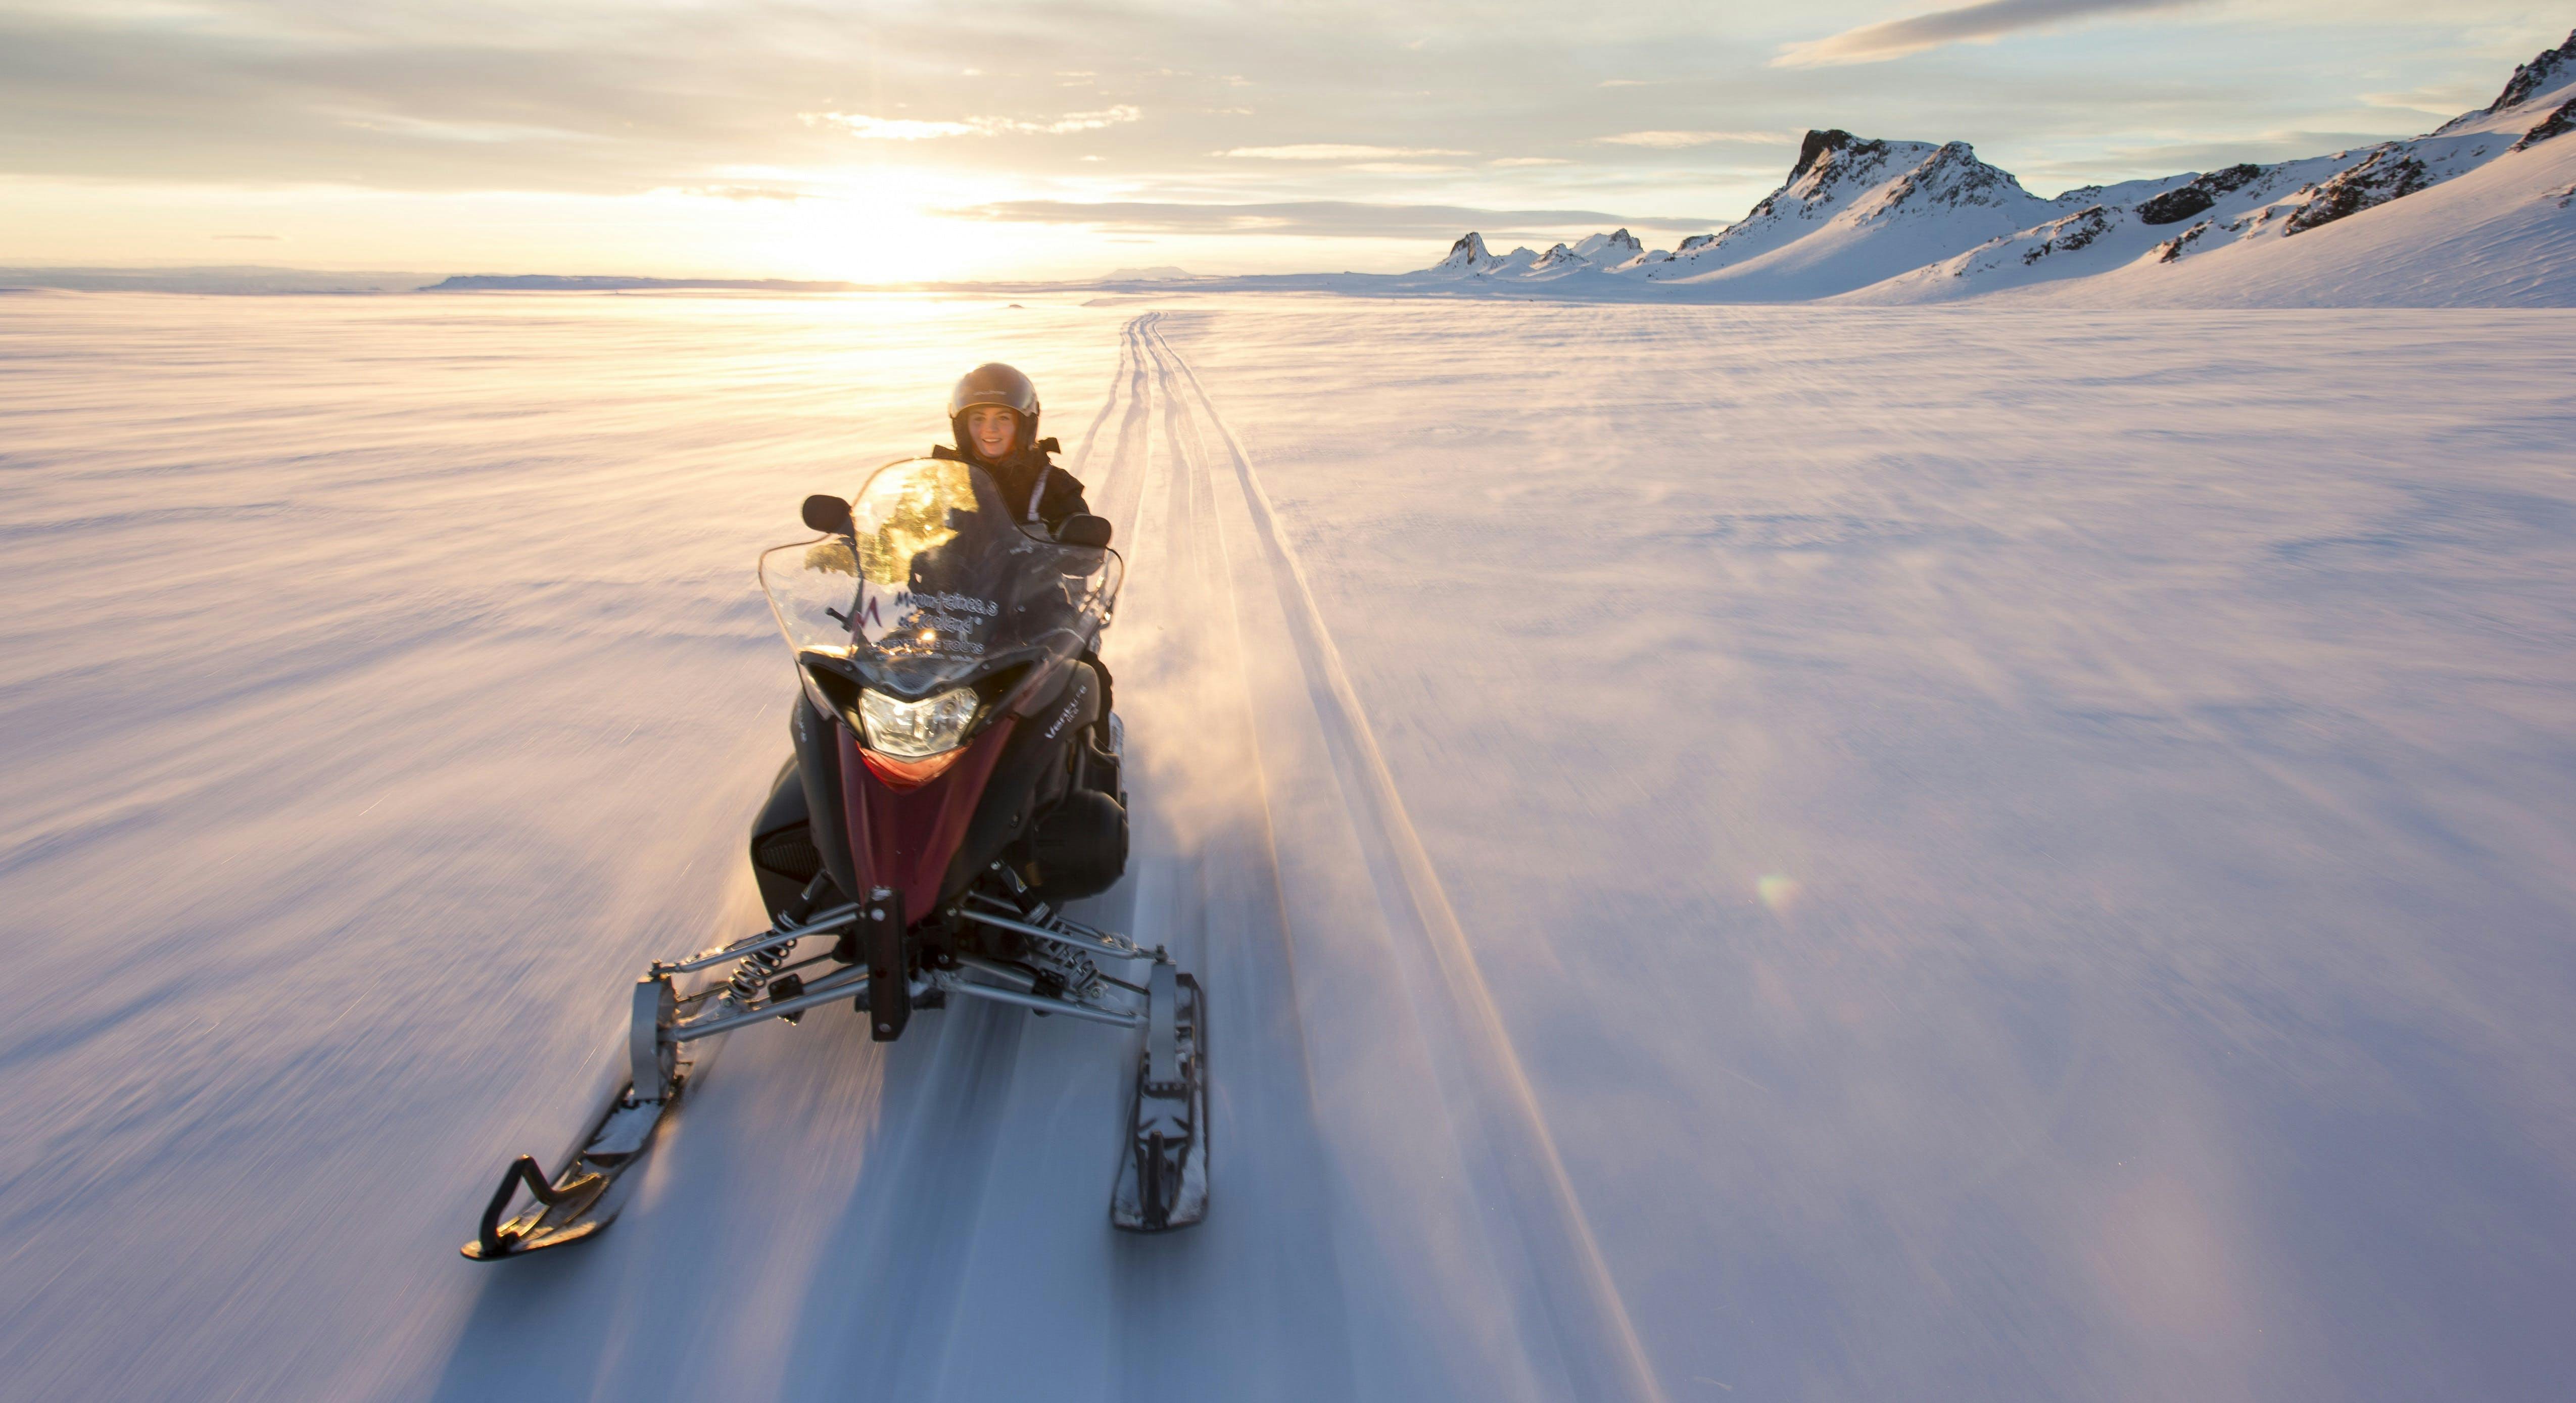 雪地摩托是冰岛最受欢迎的旅行项目之一。